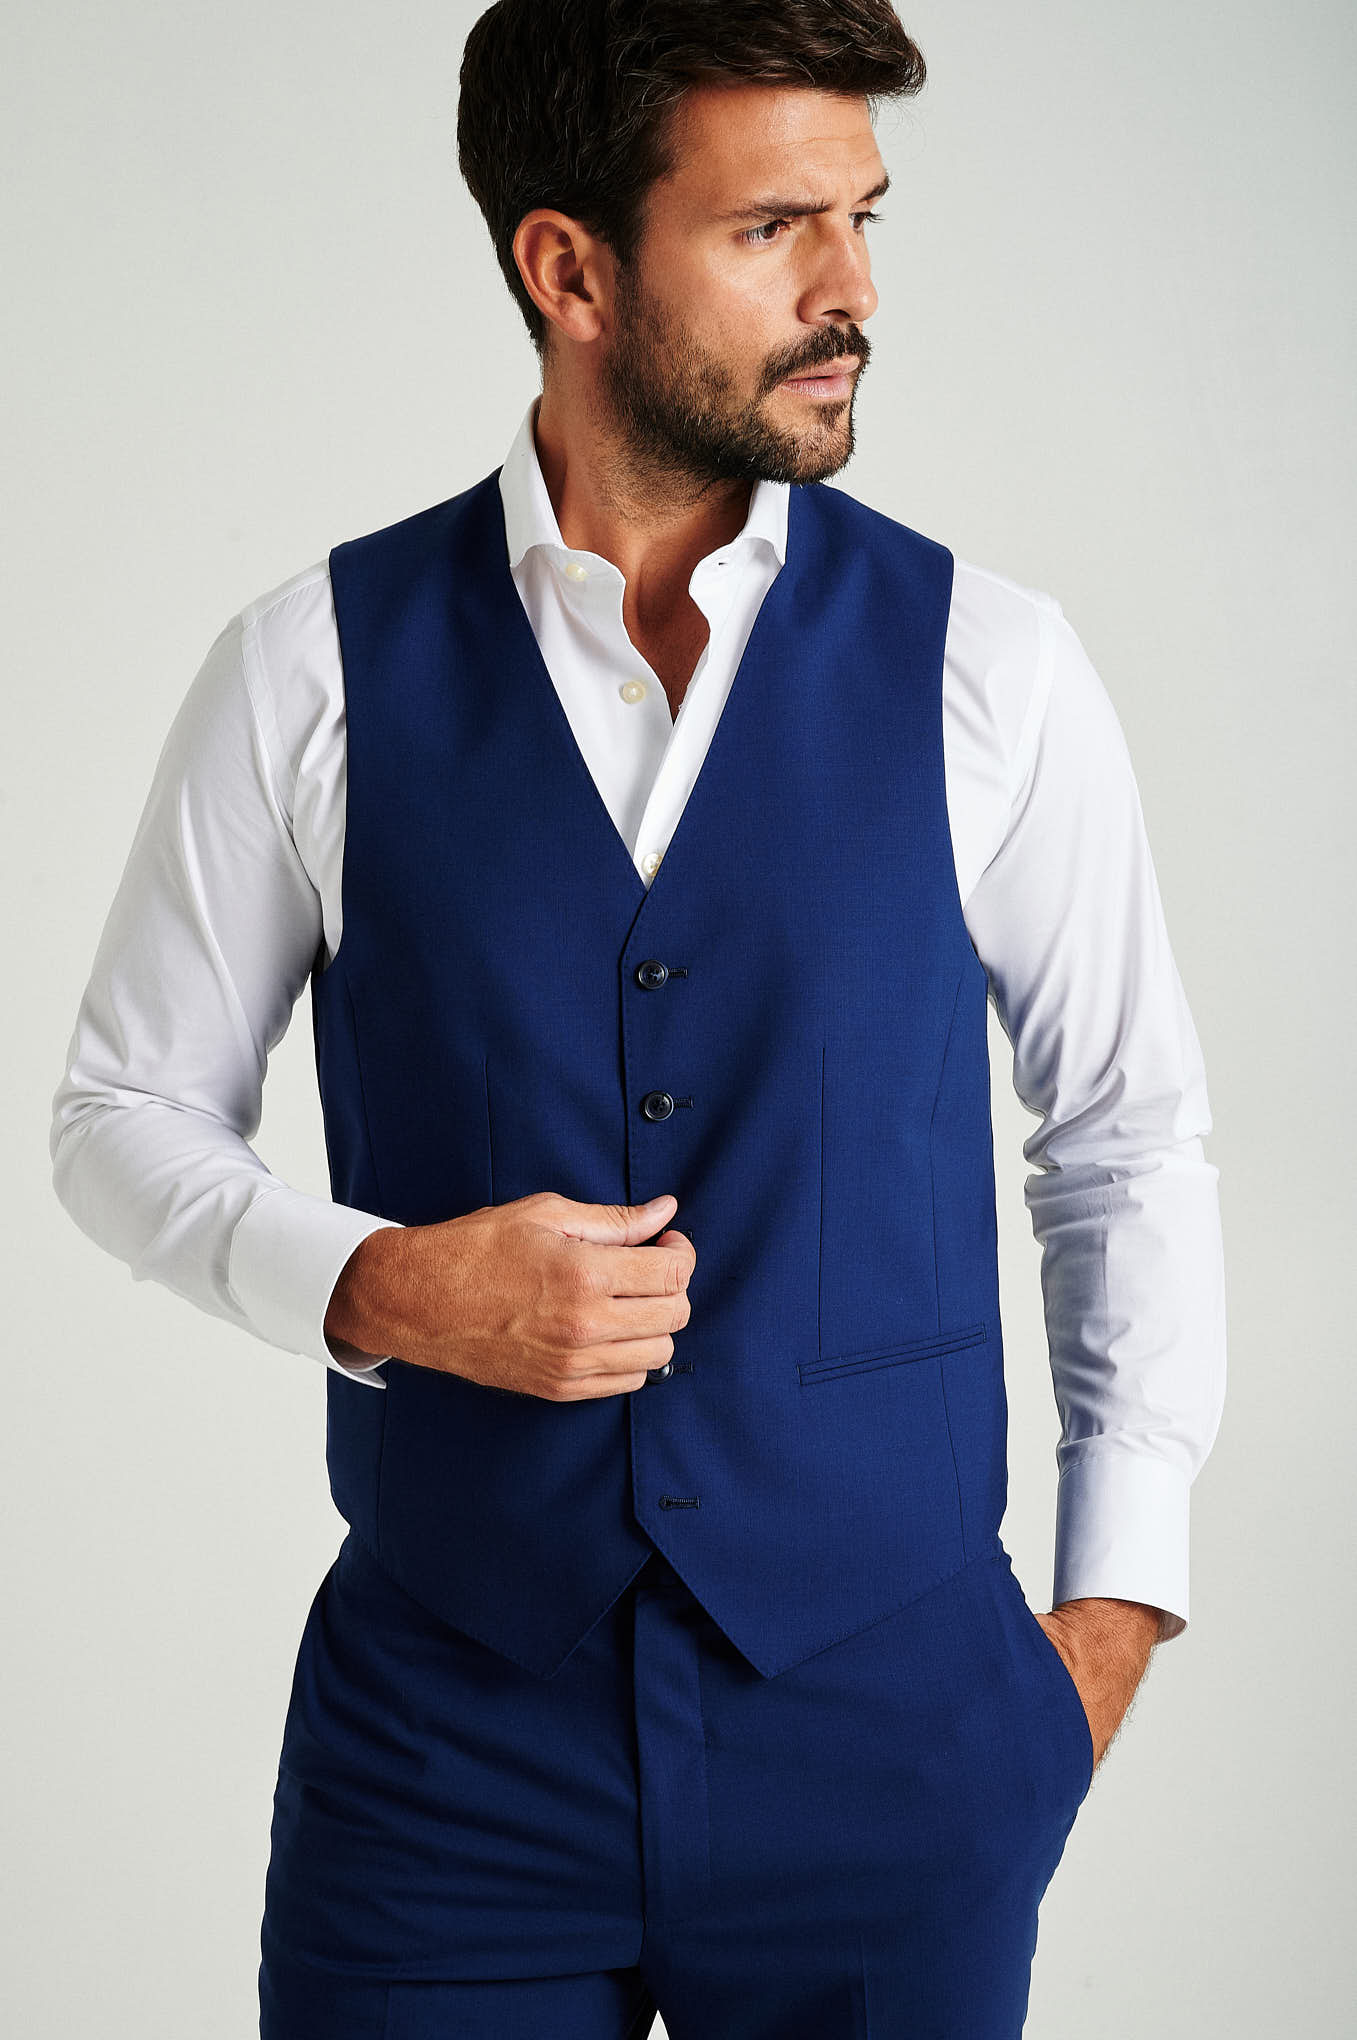 Suit Vest Blue Formal Man